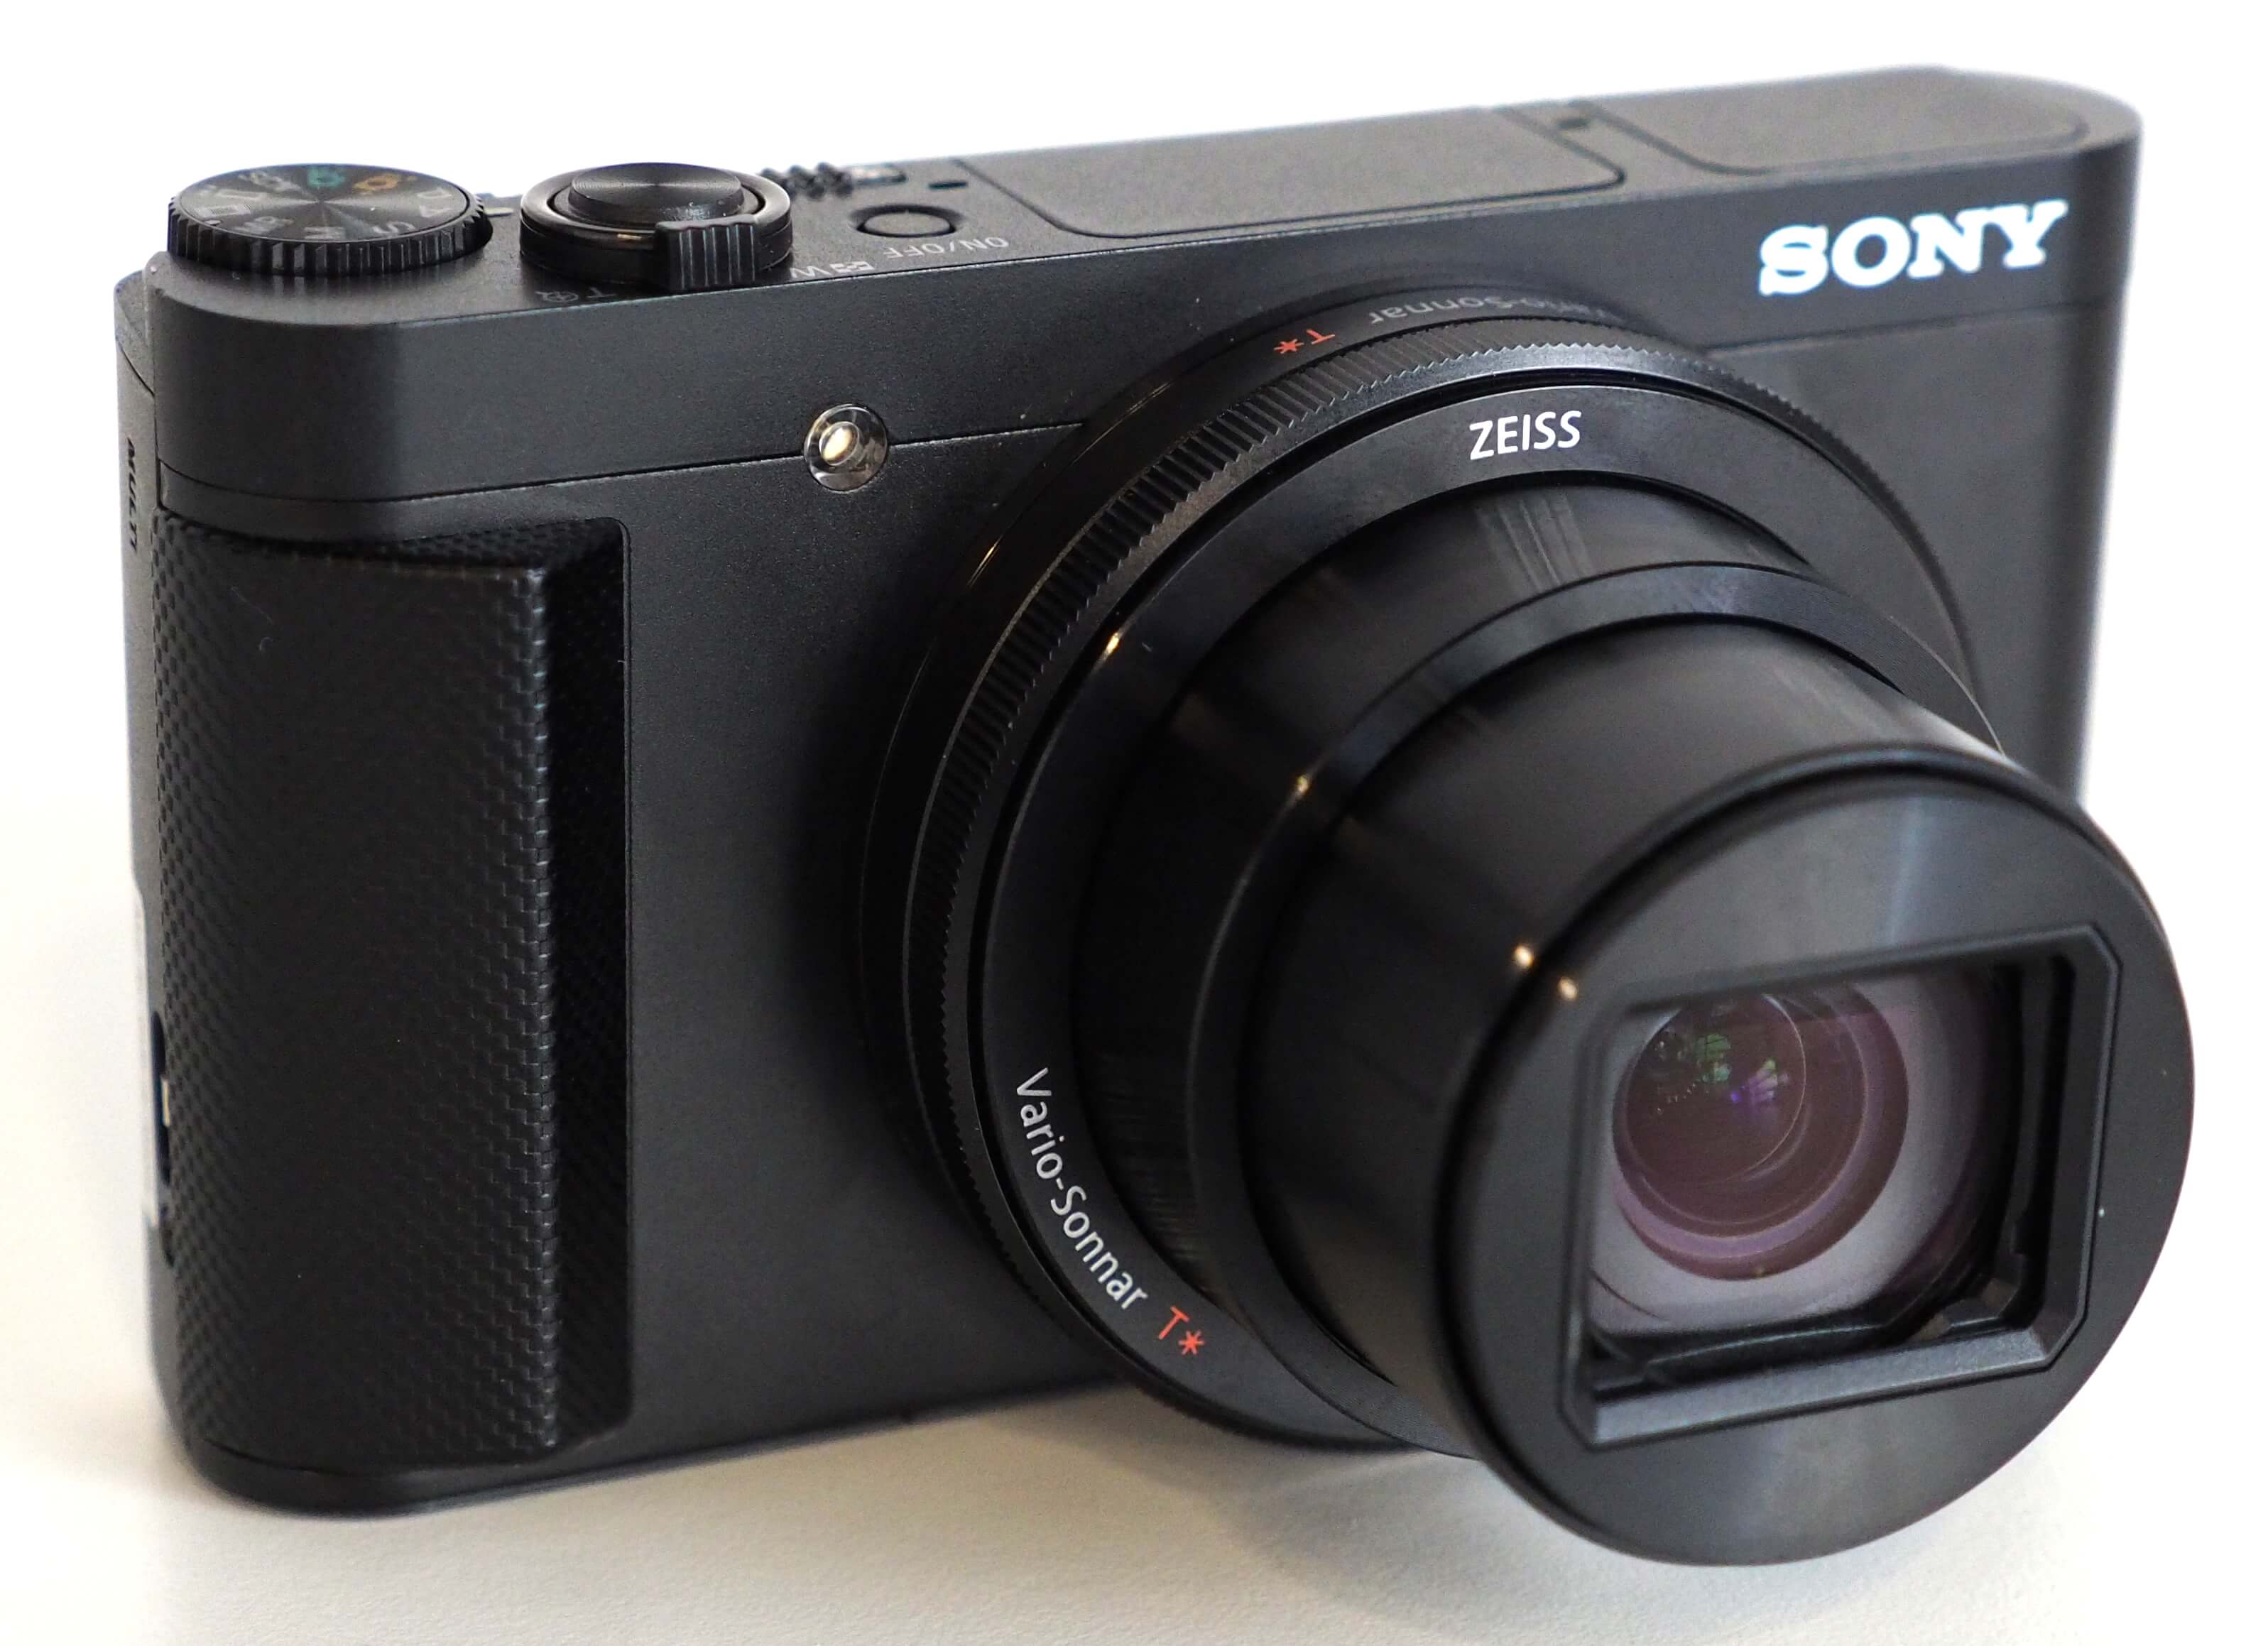  best travel cameras 2018: Sony Cyber-Shot HX90V